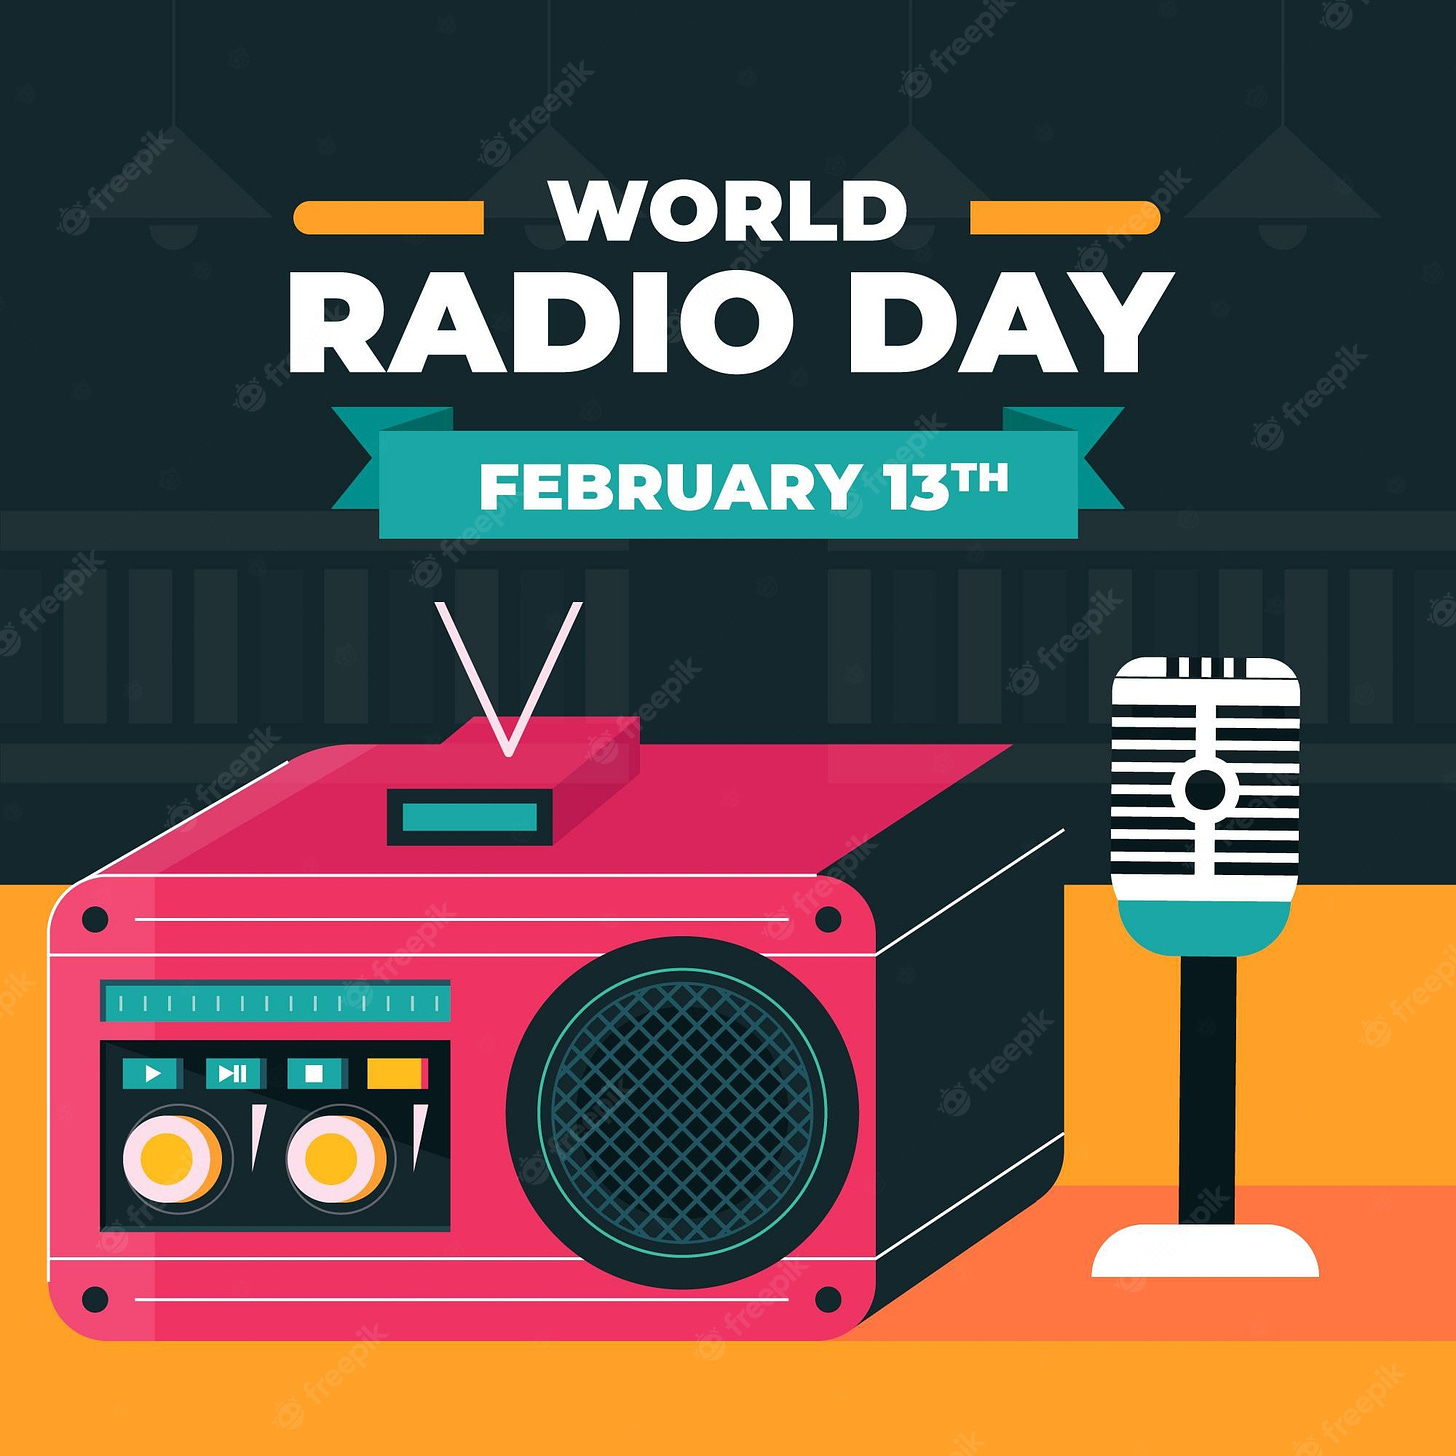 International Radio Day Images - Free Download on Freepik